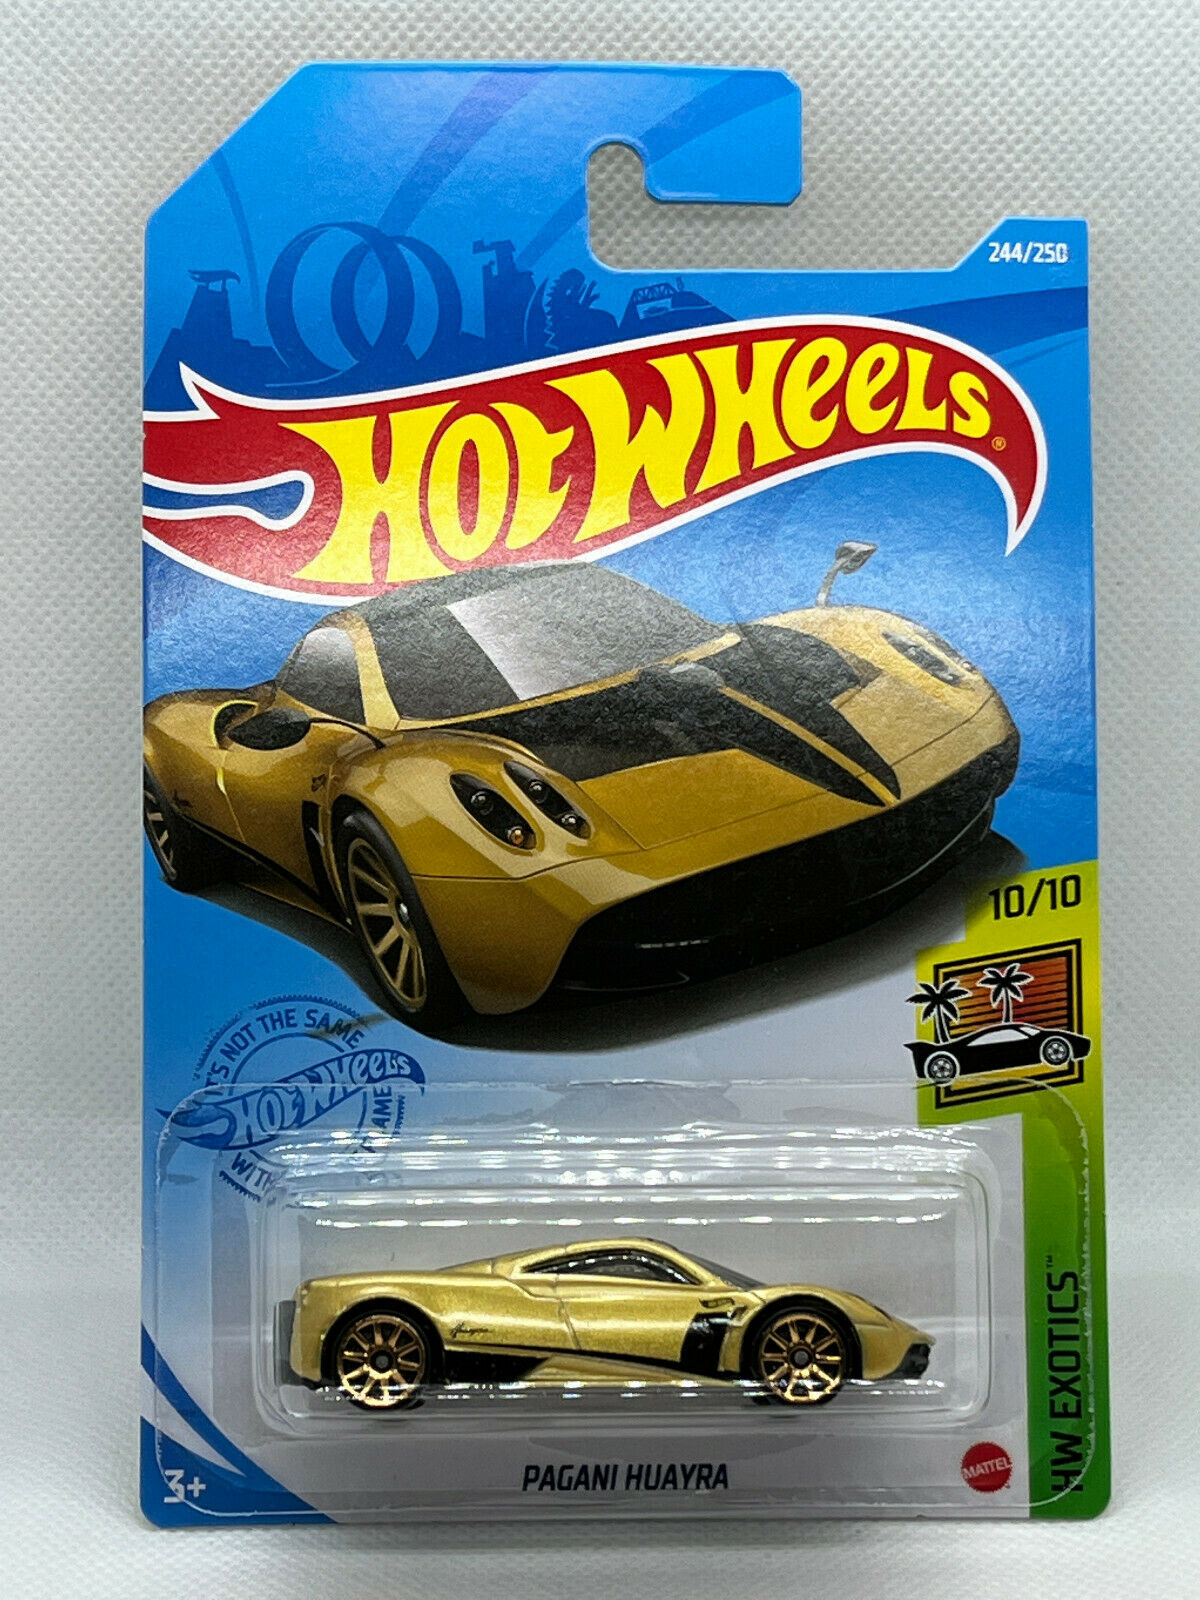 2021 Hot Wheels HW Exotics #10/10 Pagani Huayra Gold NIP